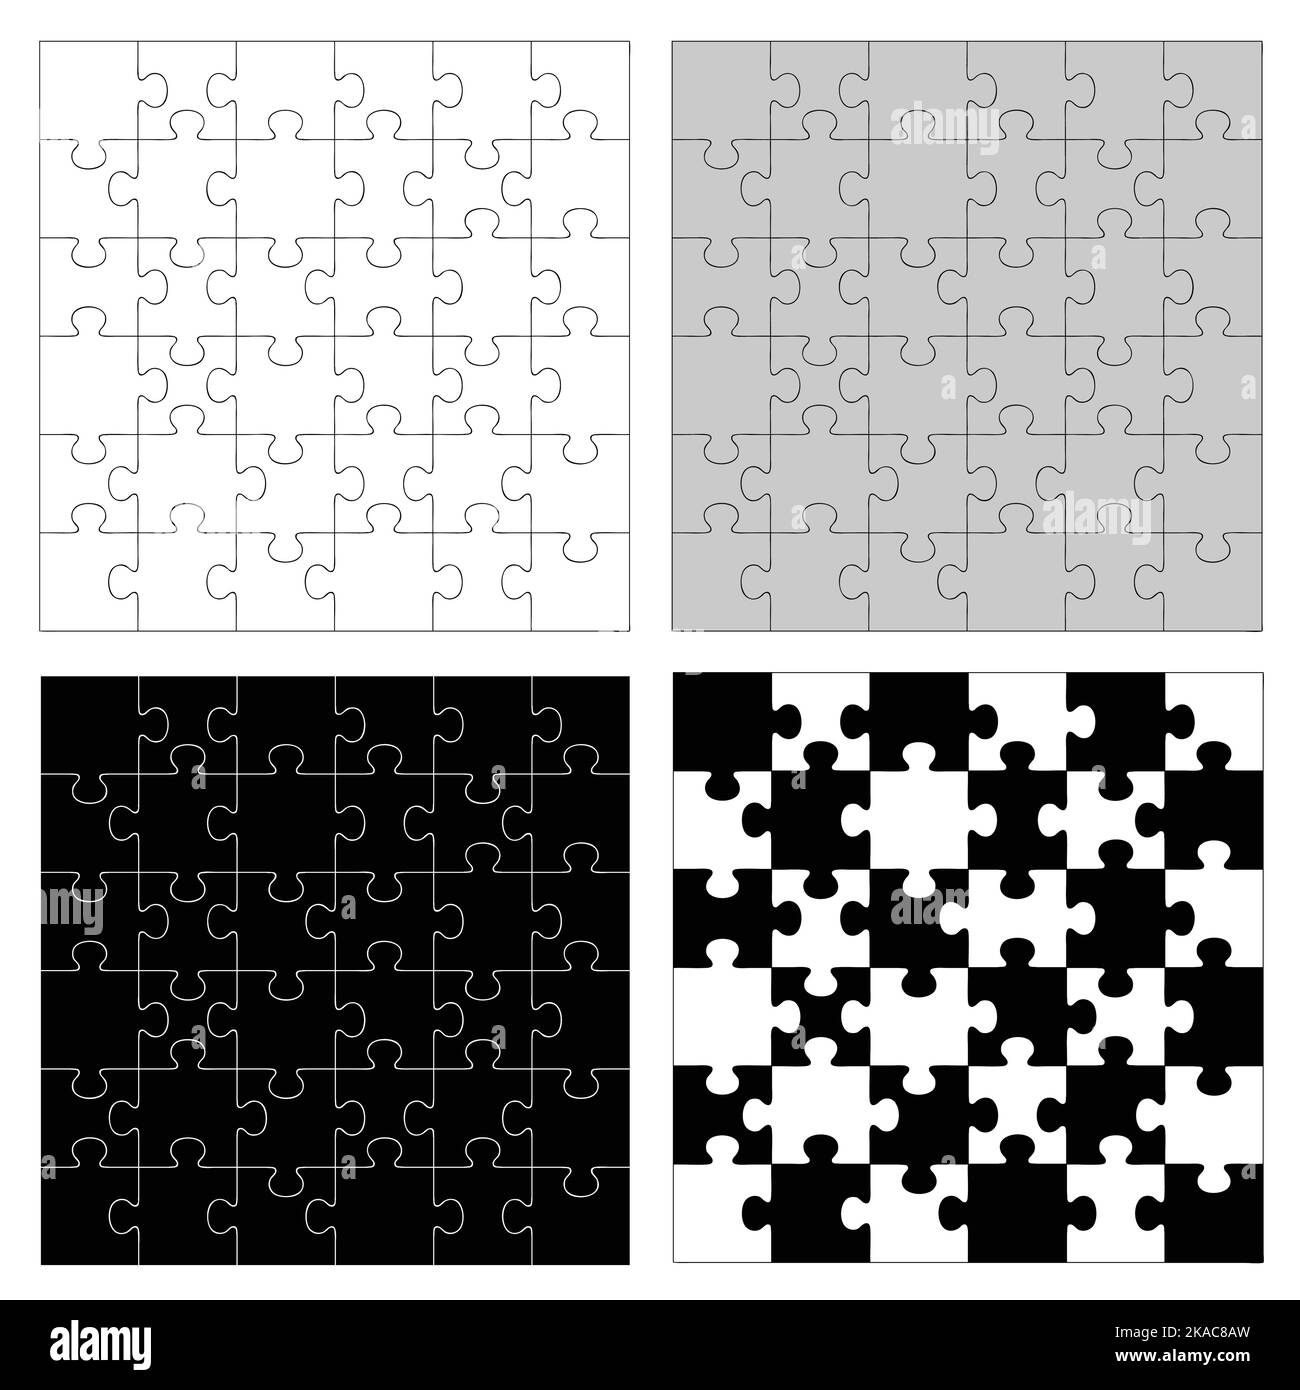 Black white jigsaw puzzle outline Stock-Vektorgrafiken kaufen - Seite 2 -  Alamy